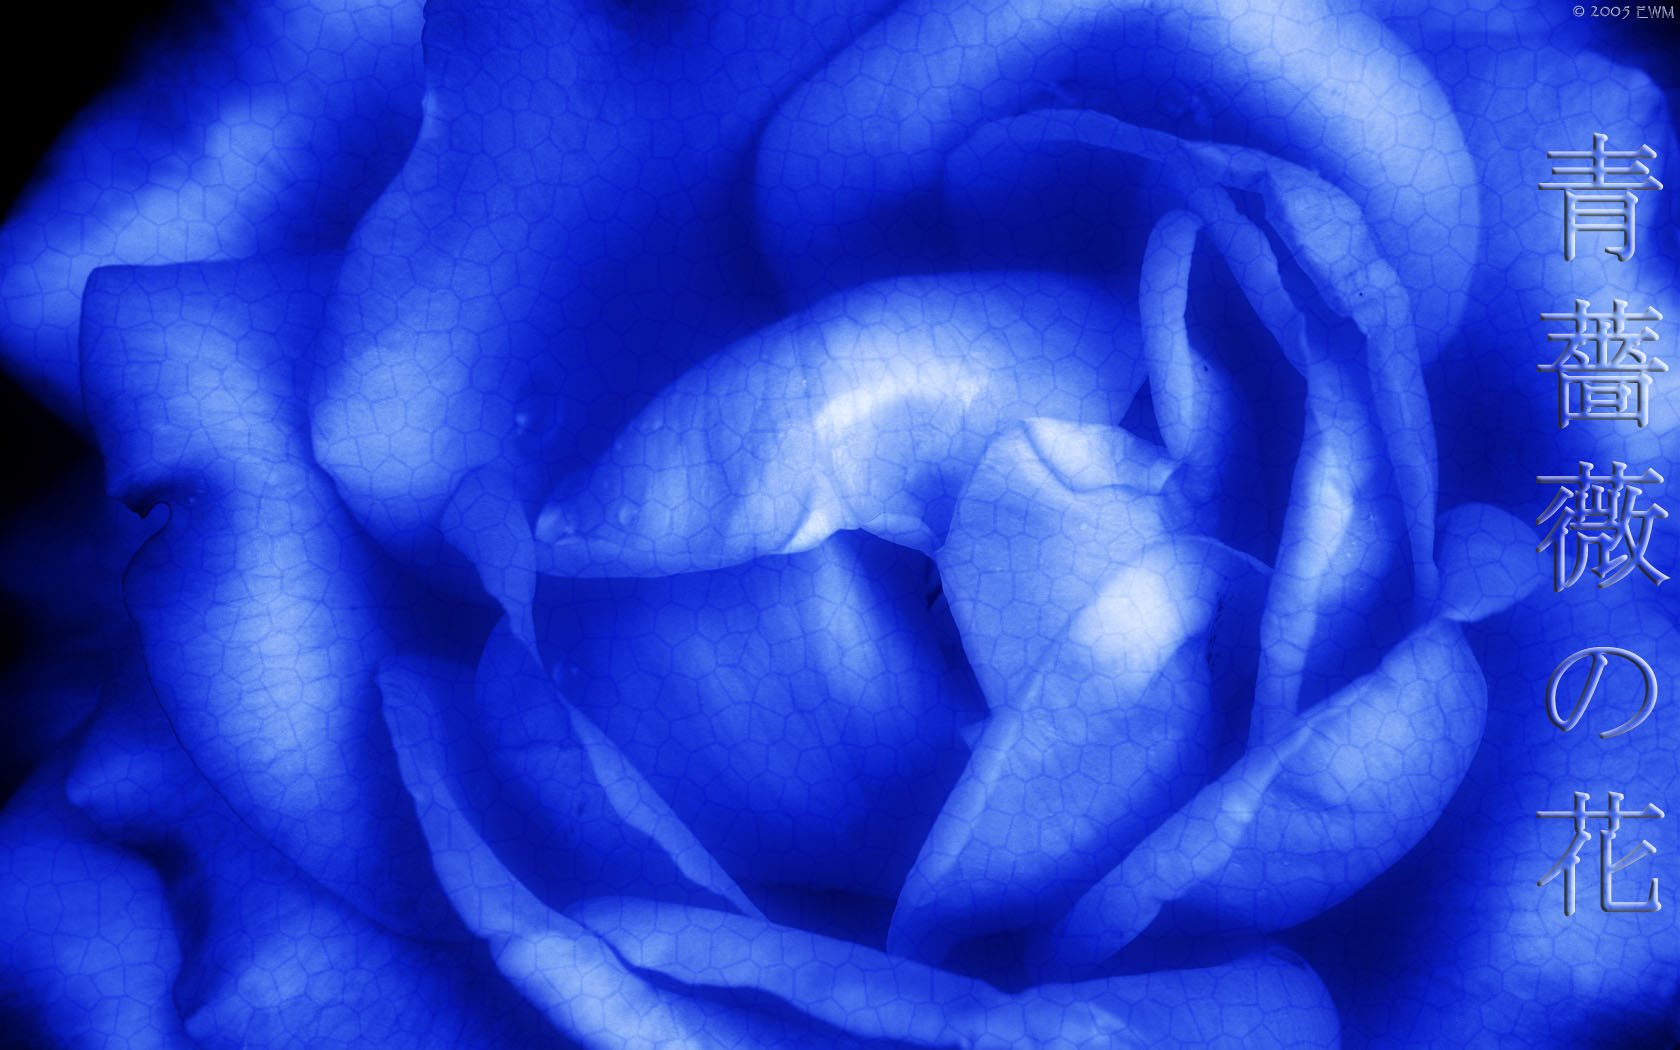 Blue Rose Wallpaper For Us